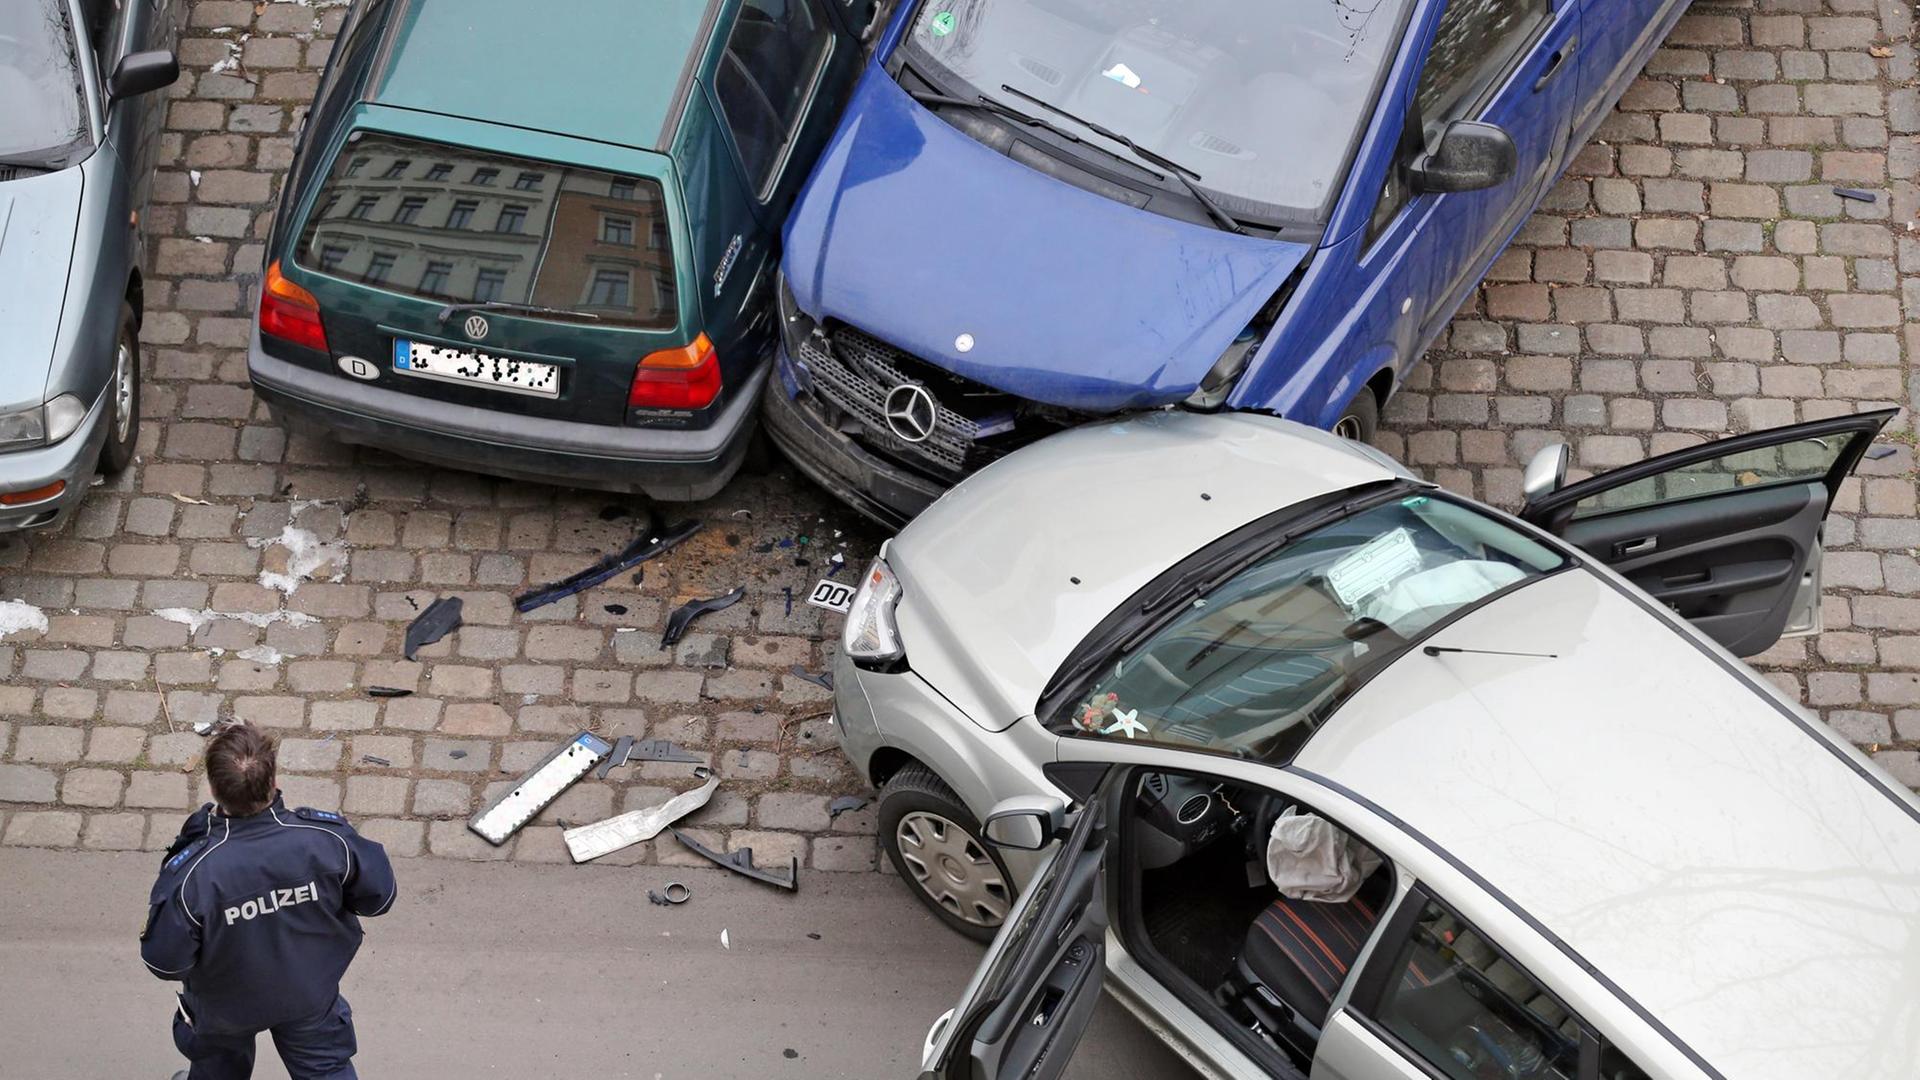 Ein Polizist nimmt am 29.01.2014 einen Verkehrsunfall an dem ein Ford Focus, ein VW Golf 3 und ein Mercedes Transporter Viano beteiligt sind in Leipzig (Sachsen) auf. Foto: Jan Woitas | Verwendung weltweit